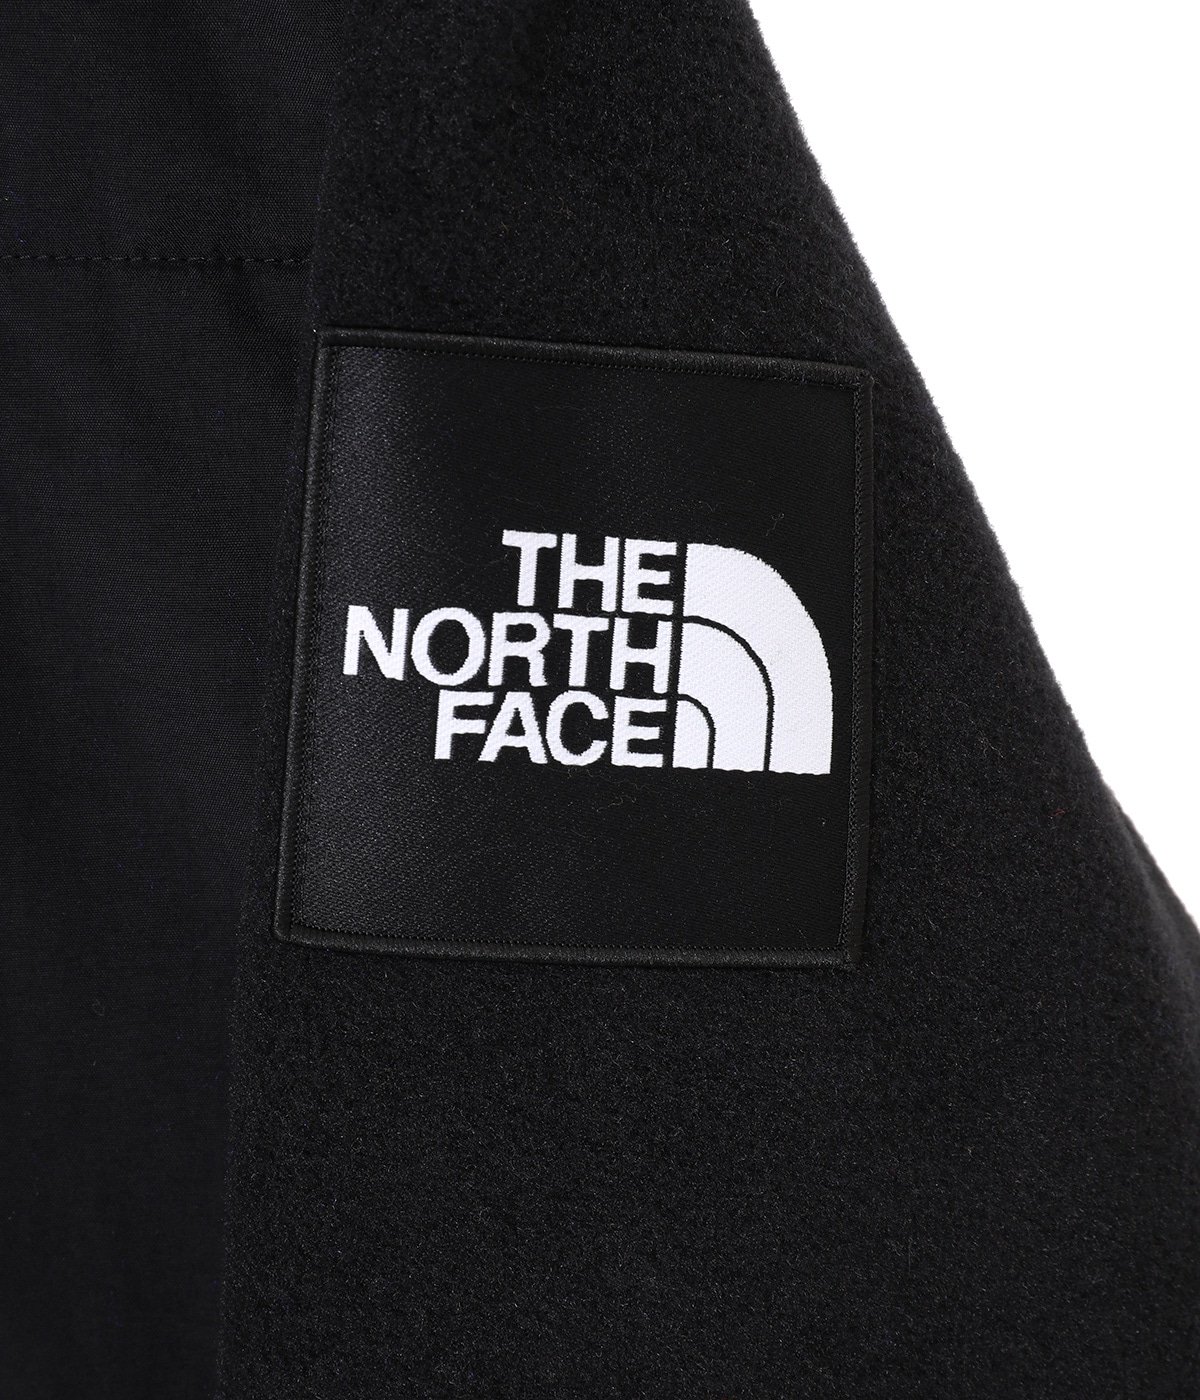 THE NORTH FACE(ザ ノースフェイス) Denali Jacket / アウター 